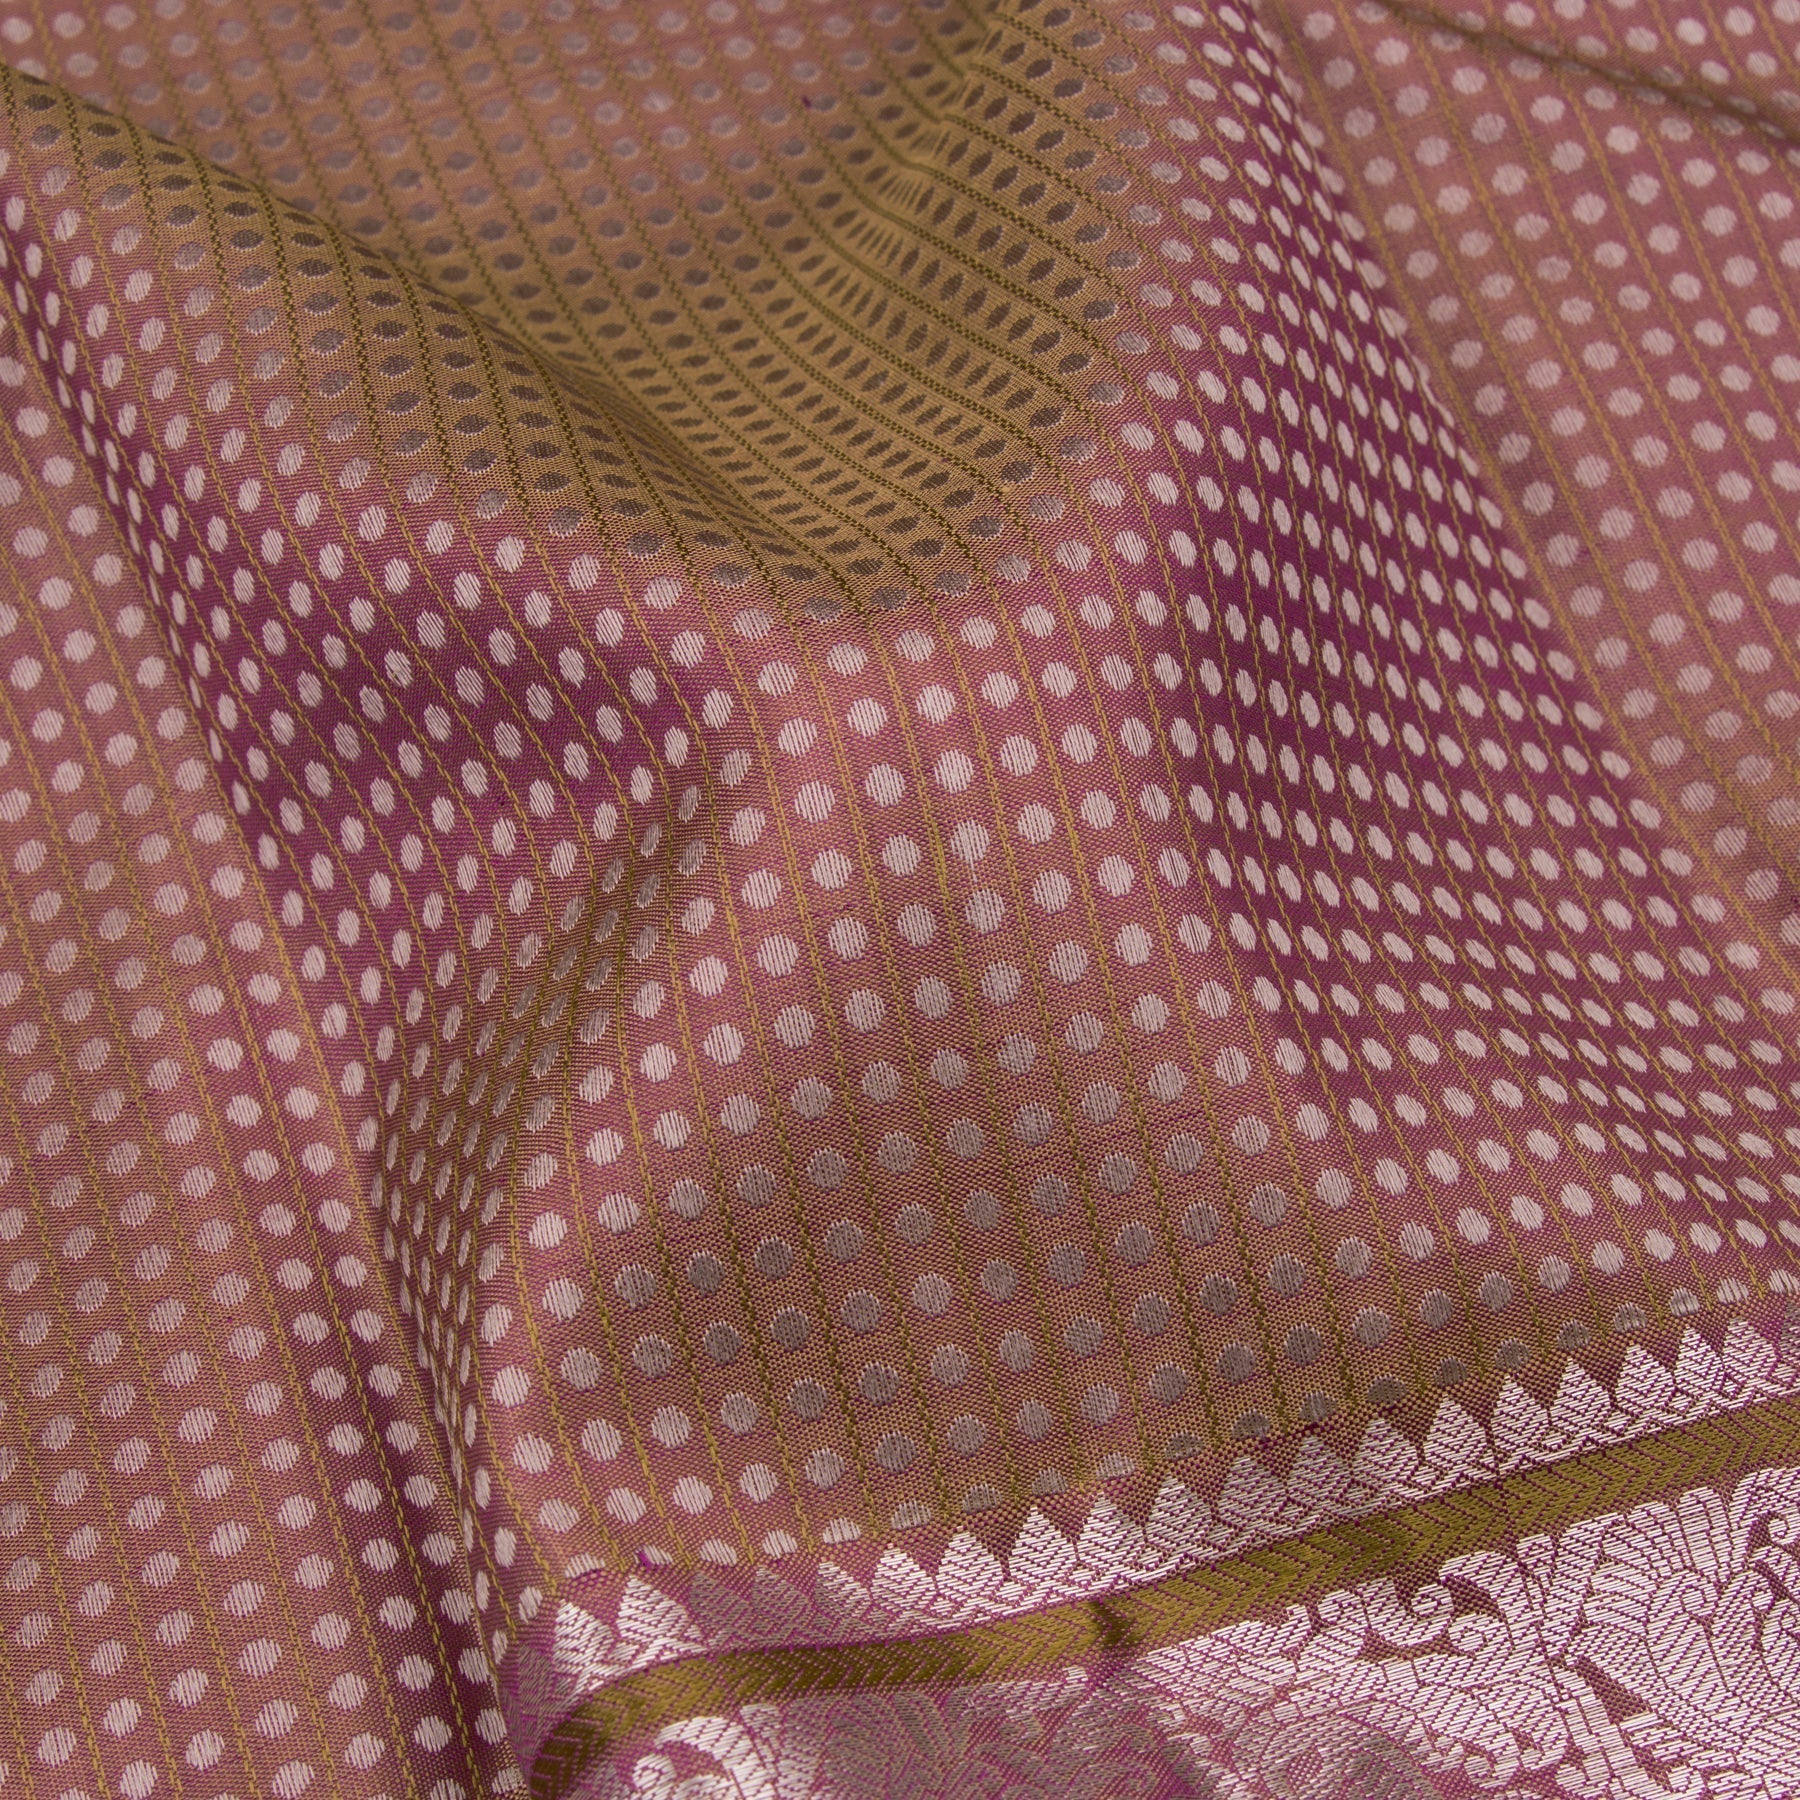 Kanakavalli Kanjivaram Silk Sari 22-100-HS001-11863 - Fabric View